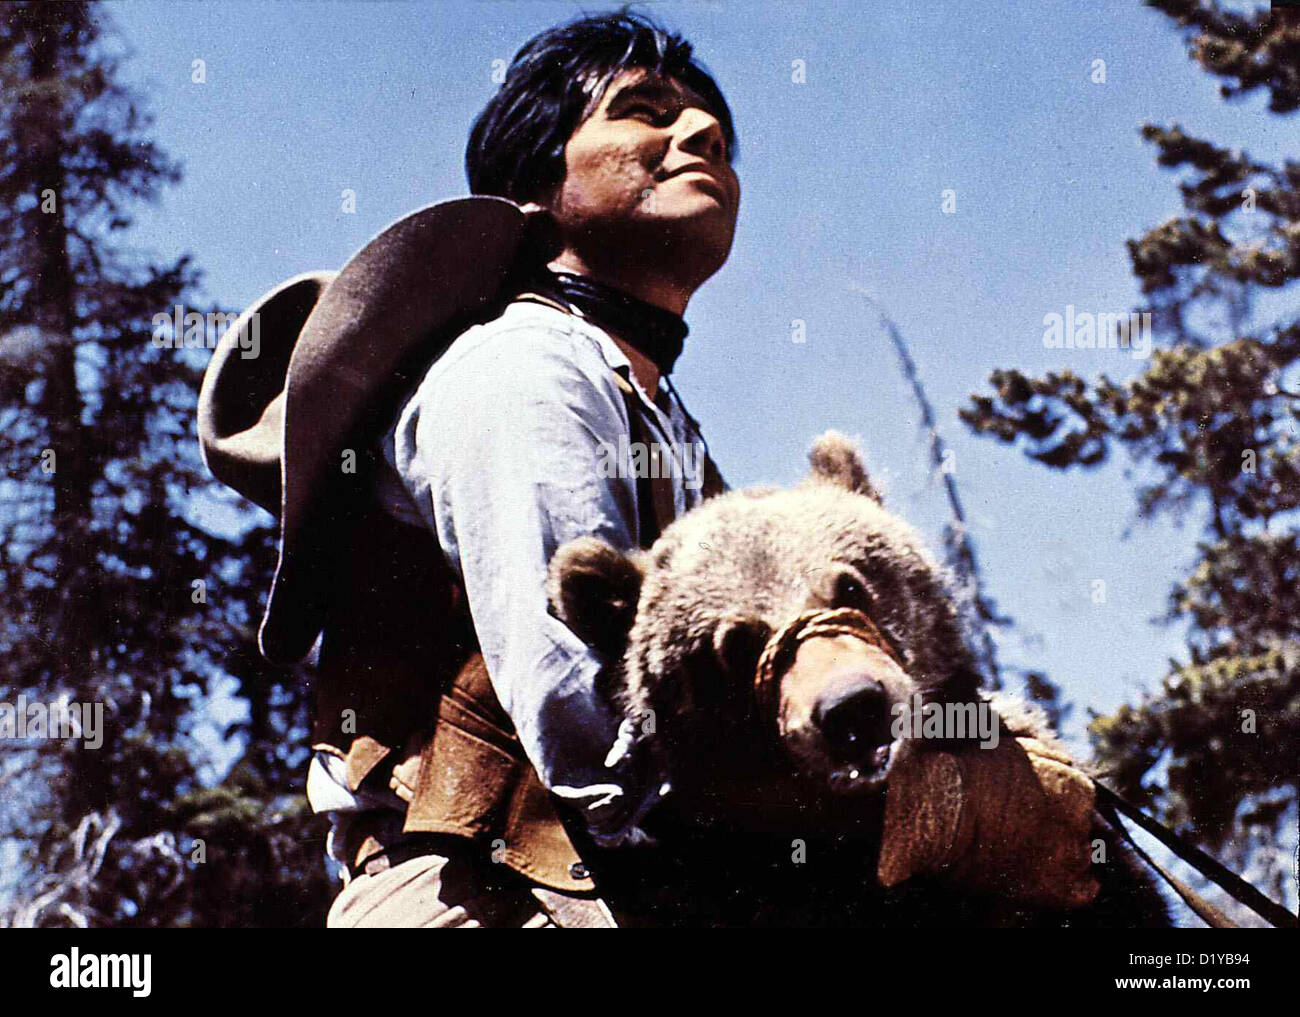 Koenig Der Grizzlys  King Grizzlies,  John Yesno Moki (John Yesno) rettet einen kleinen Baeren, dessen Mutter getoetet wurde Stock Photo